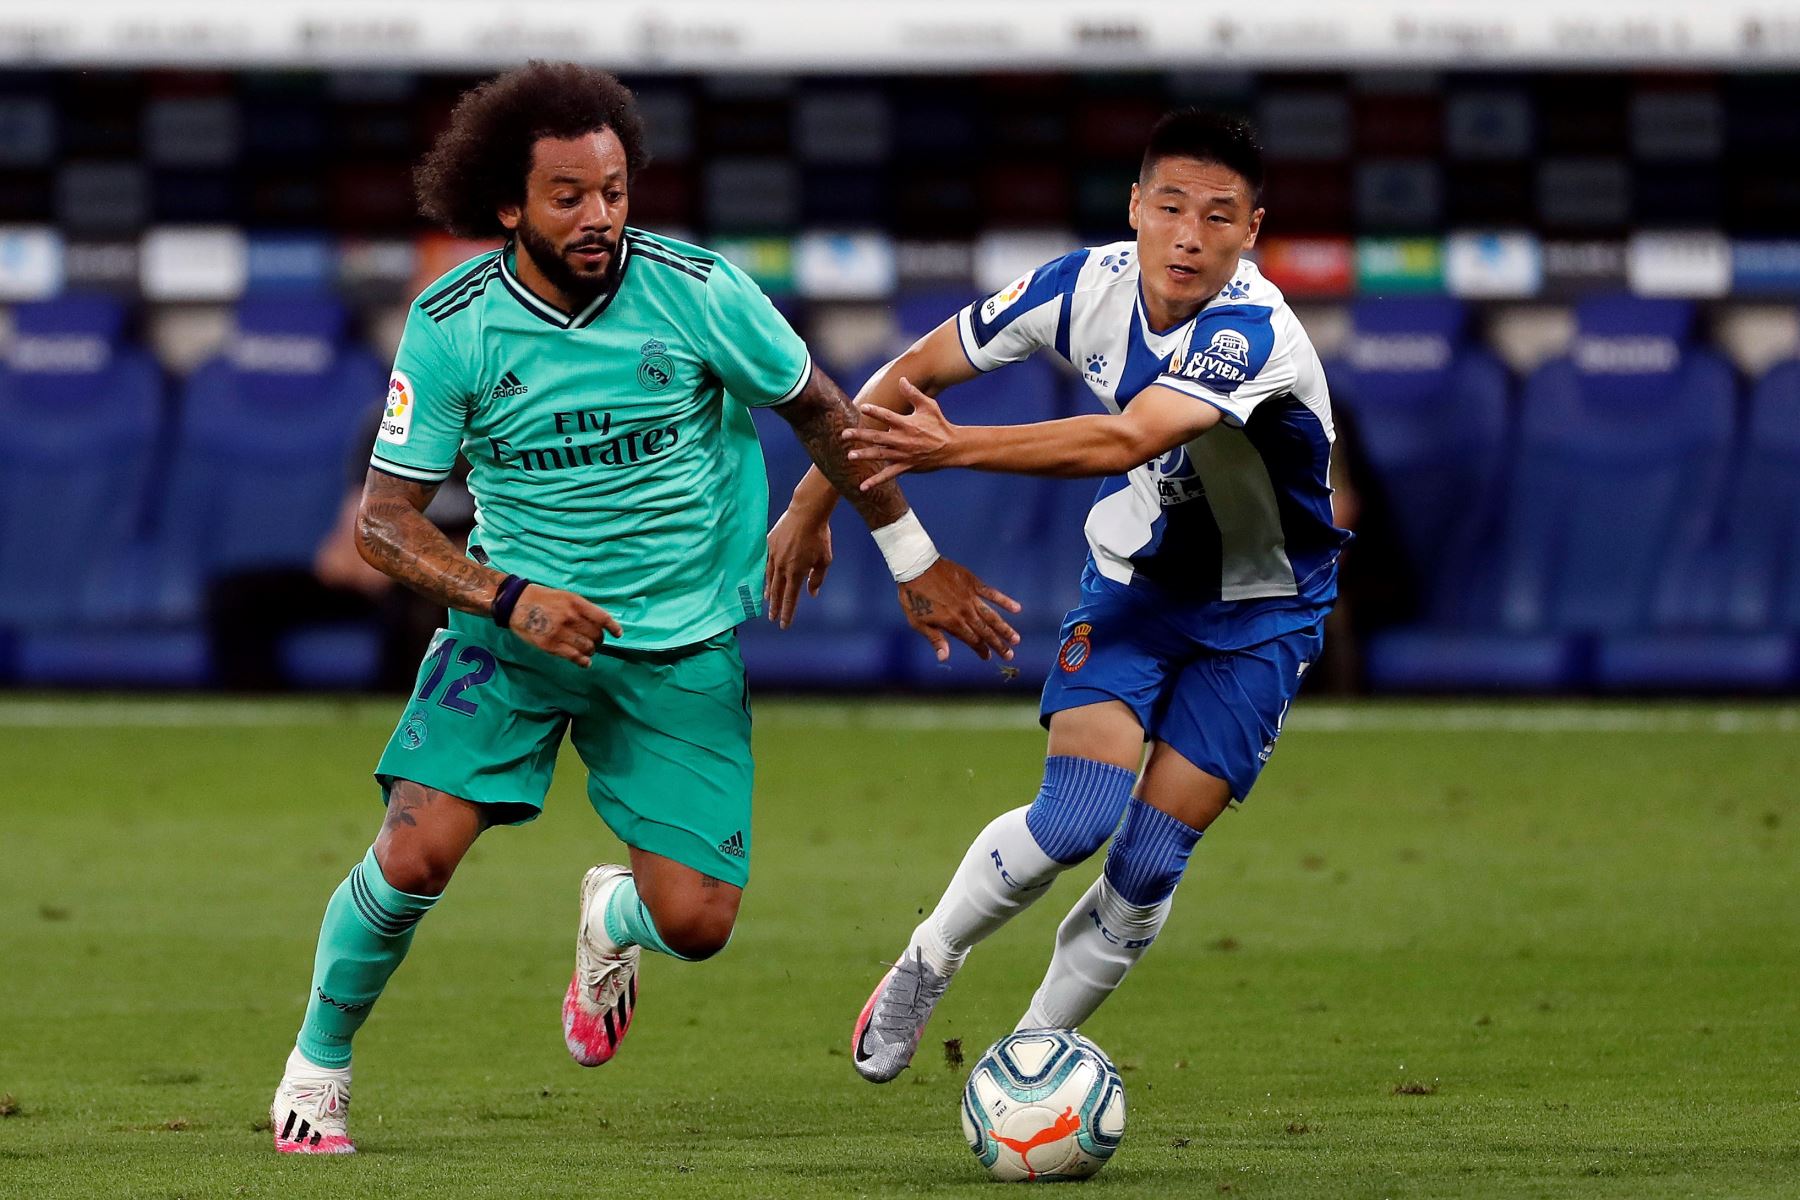 El centrocampista chino del Espanyol, Wu Lei, pelea por el control del balón con el defensa brasileño del Real Madrid, Marcelo Vieira, durante el partido correspondiente a la jornada 32 de LaLiga Santander. Foto: EFE